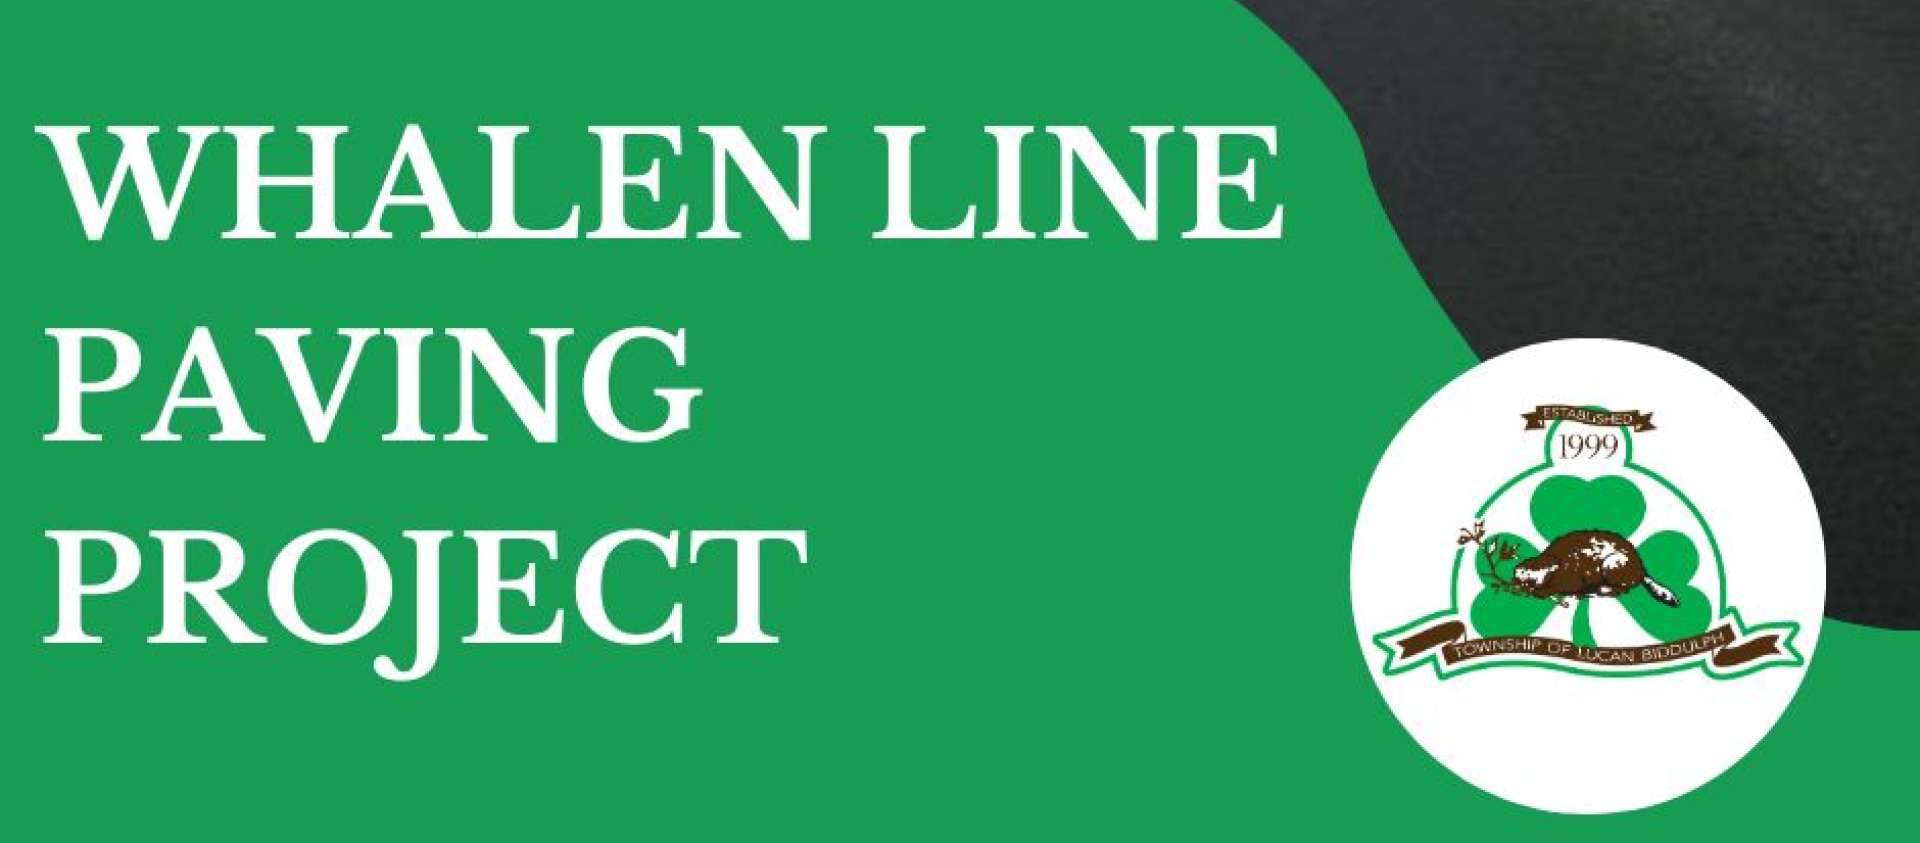 Whalen Line Repaving Project